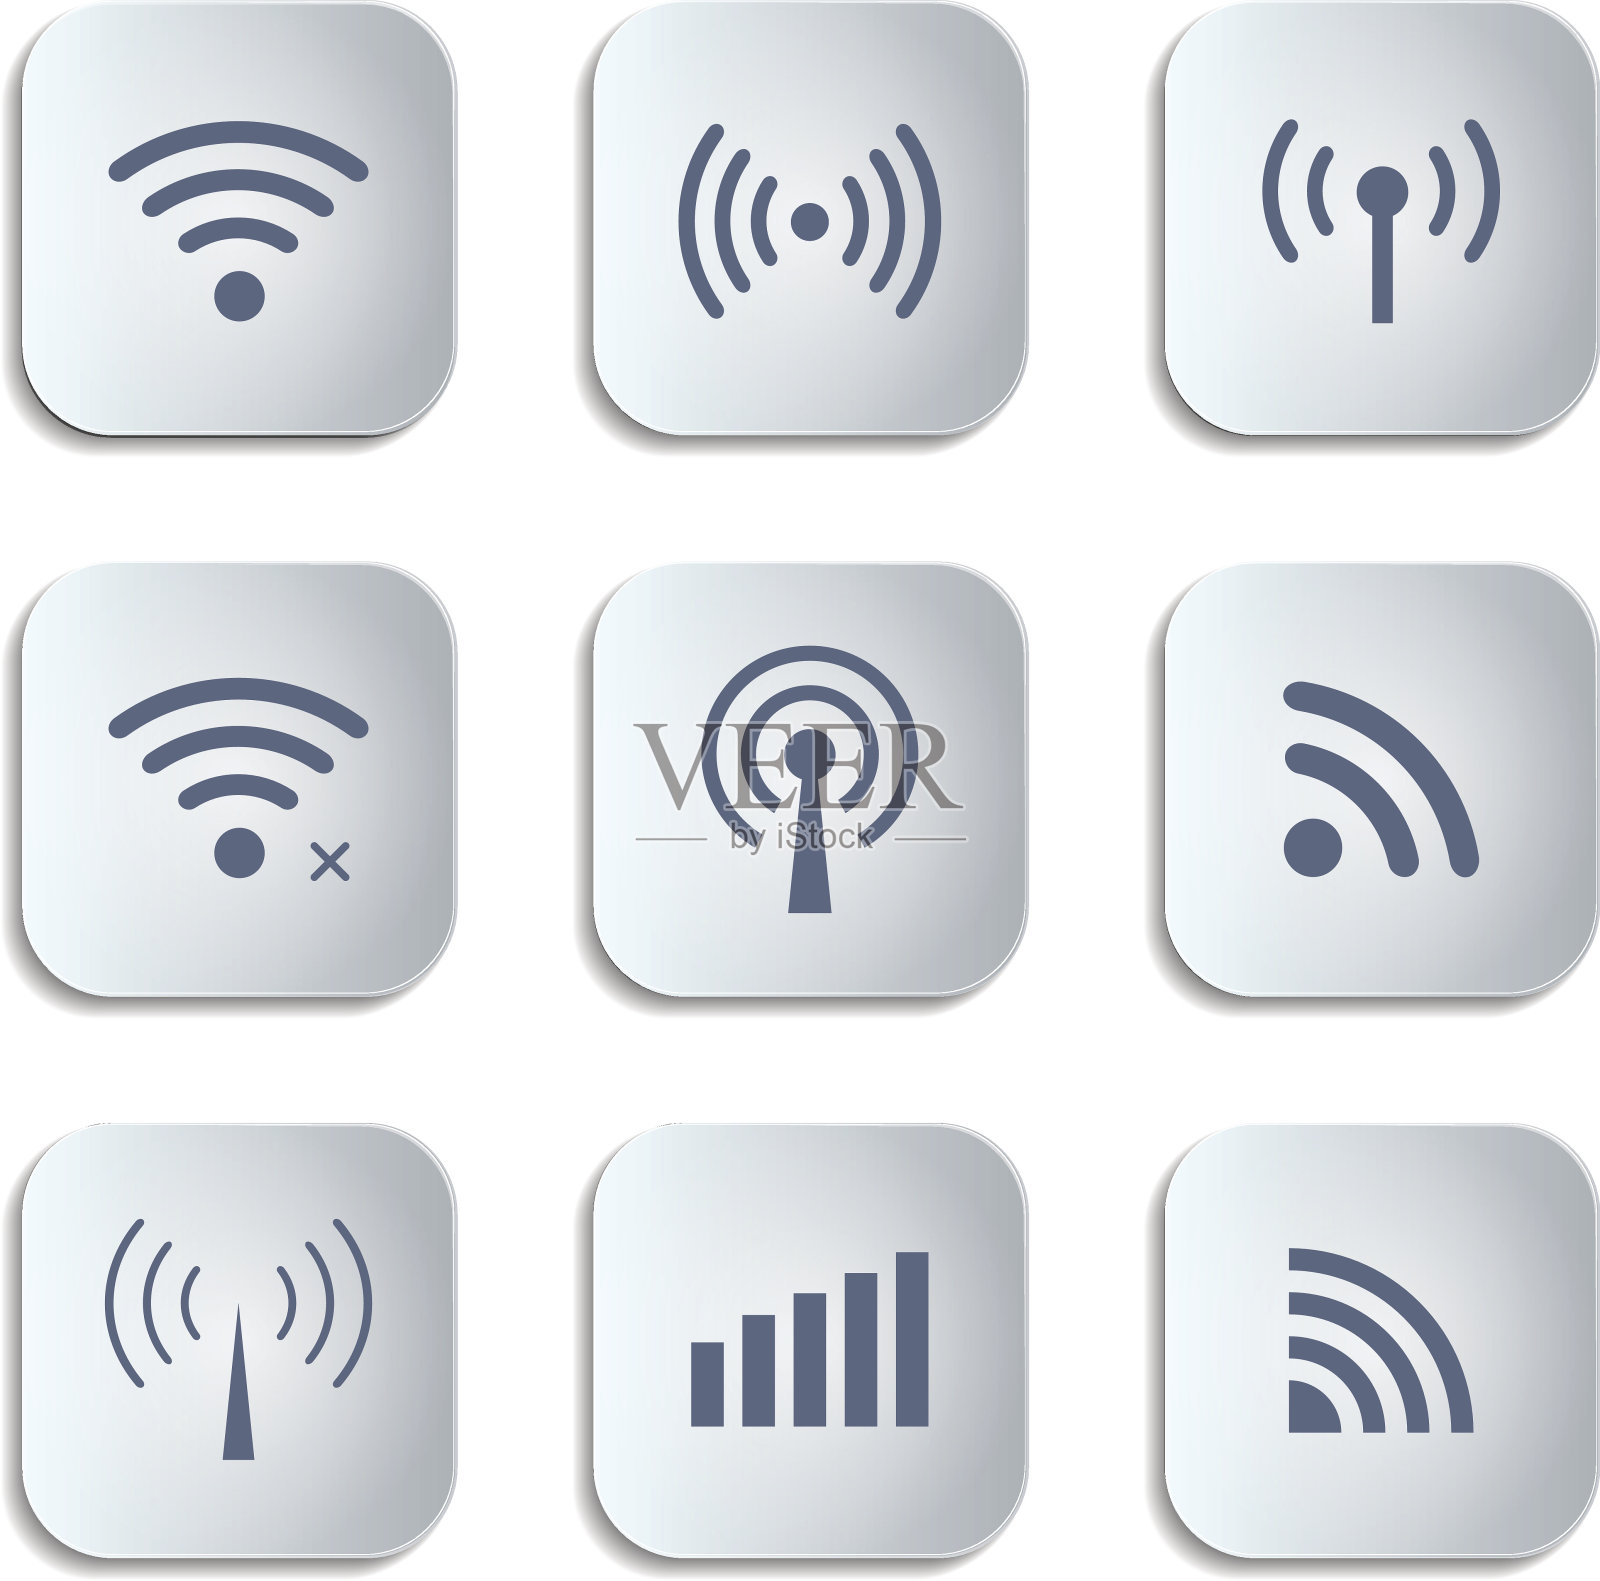 设置不同的黑色矢量无线和wifi按钮图标素材